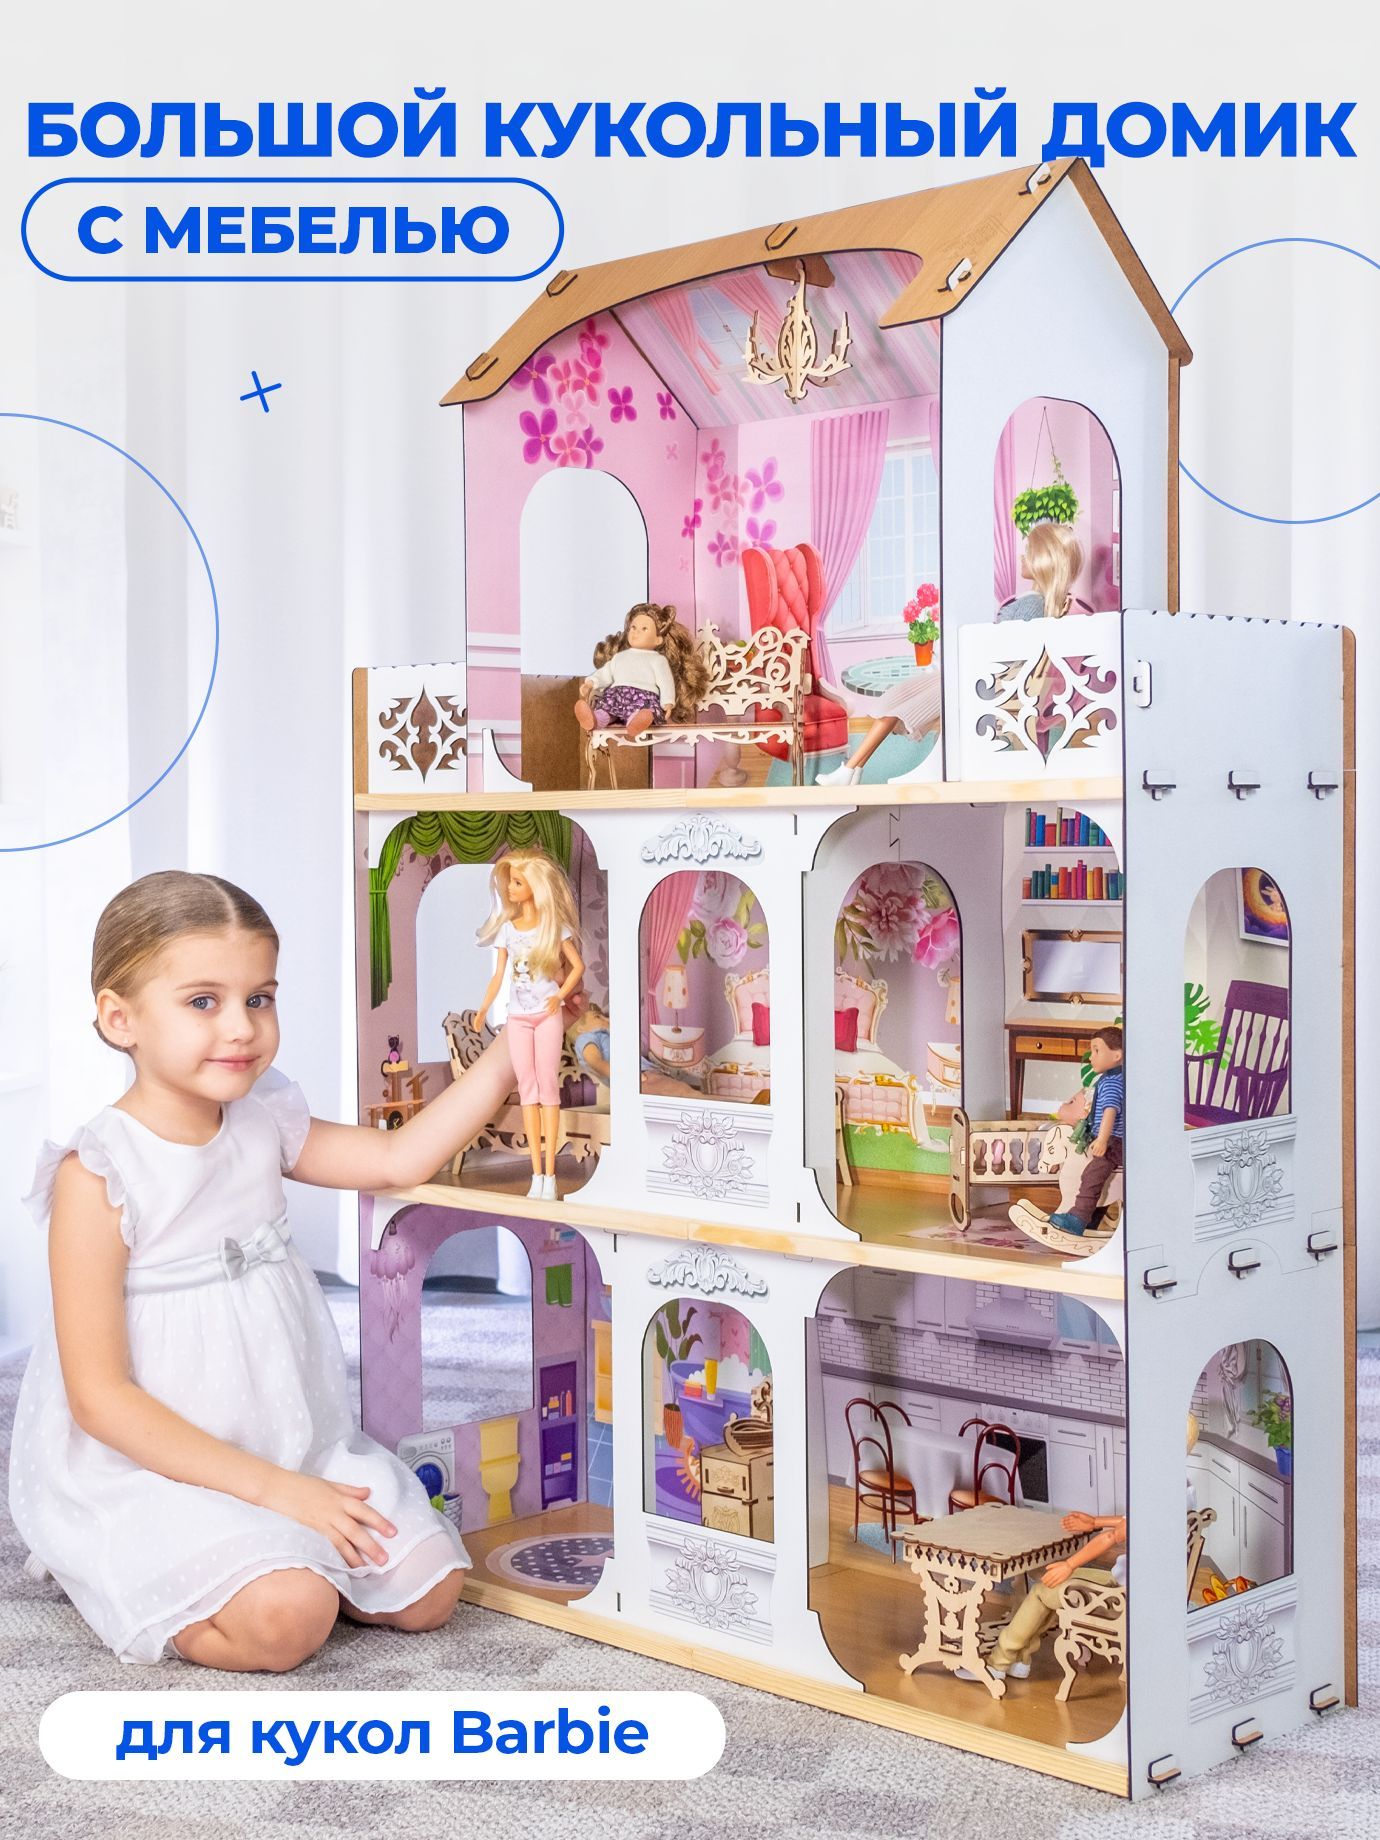 Купить деревенский домик для кукол из фанеры во Владимире.